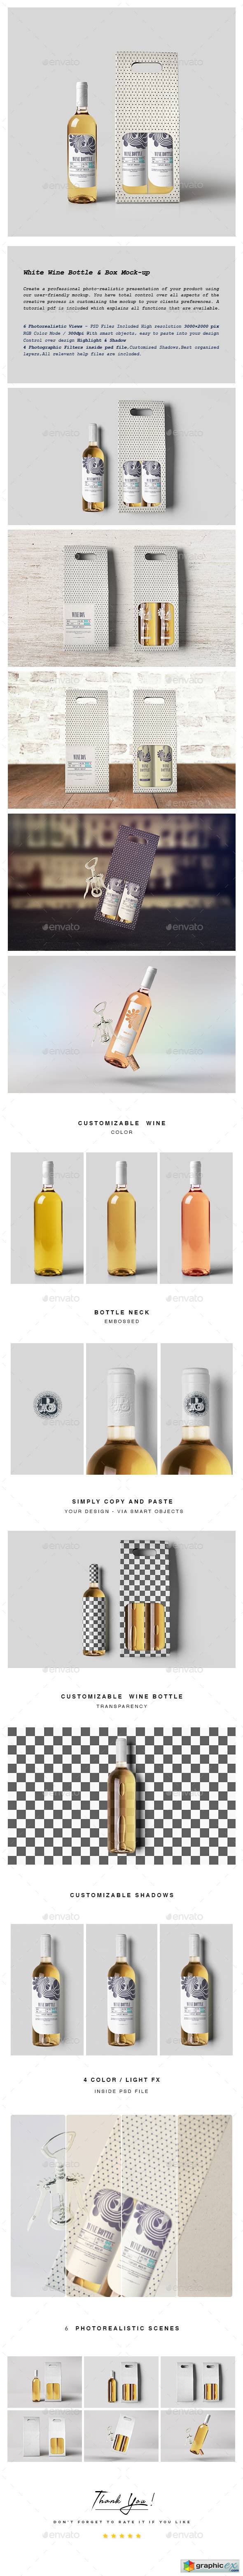 White Wine Bottle and Box Mock-up